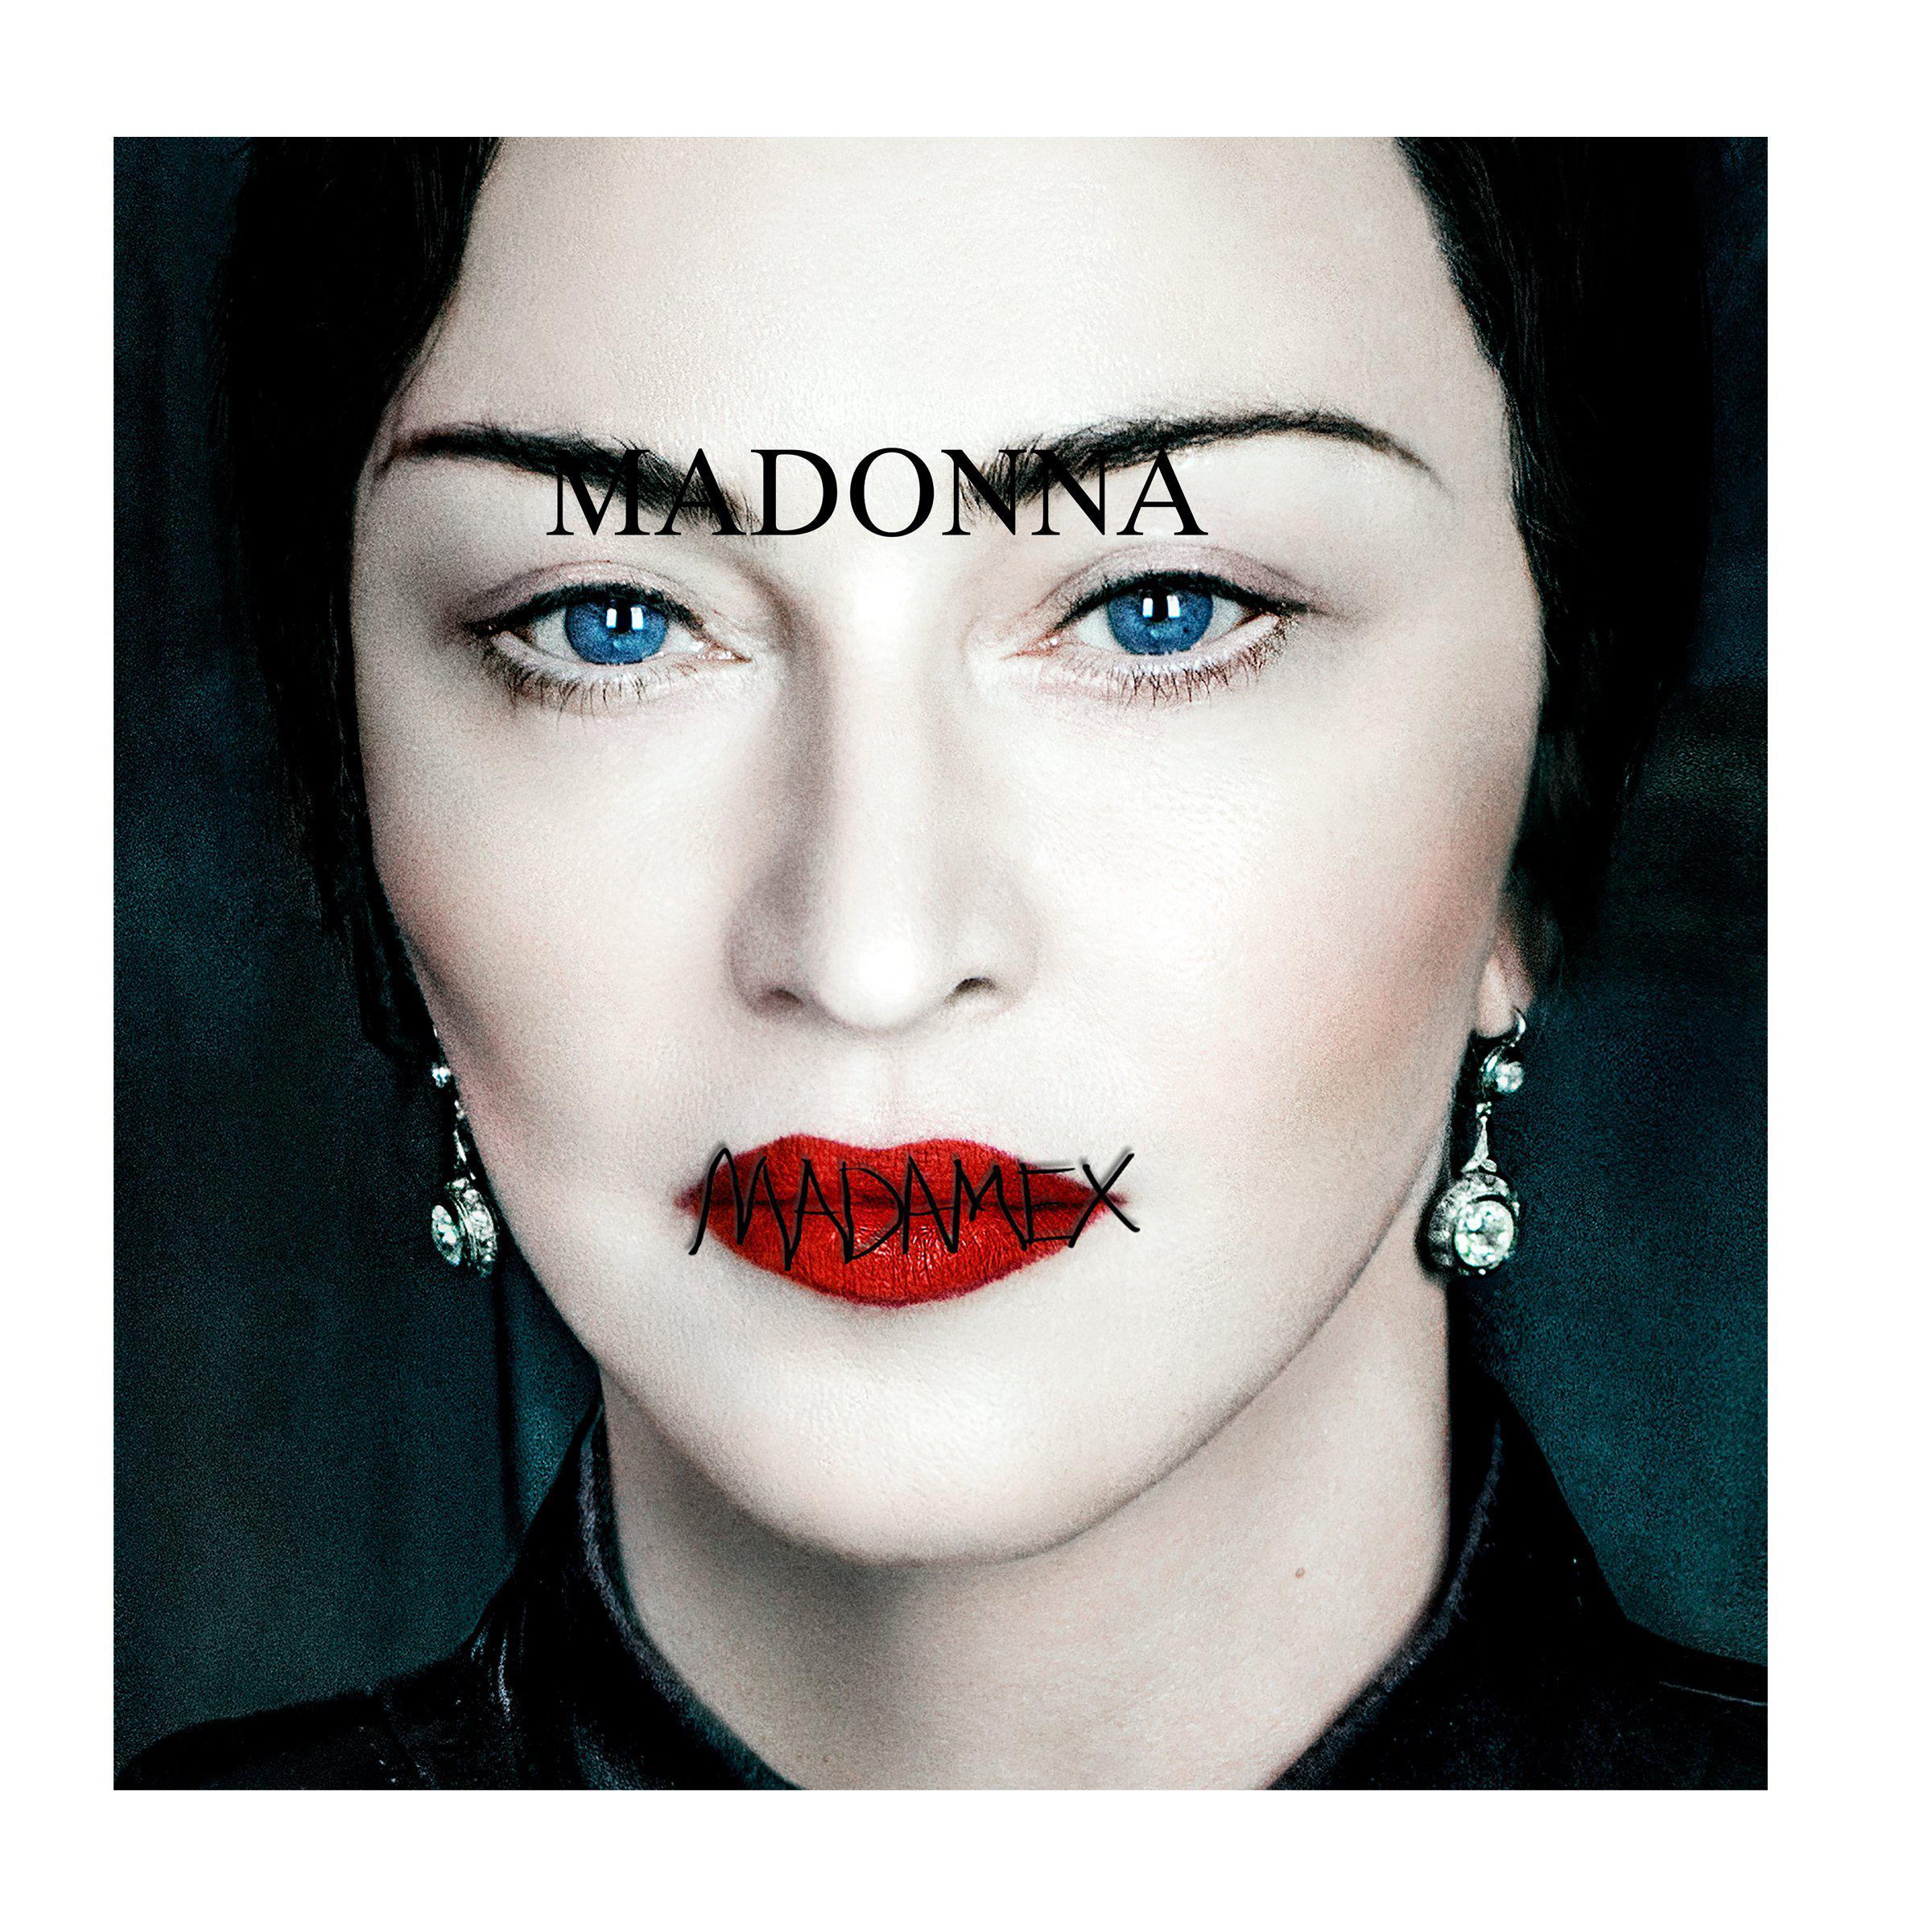 CD de Madonna 'Madonna' con folleto y estuche delgado